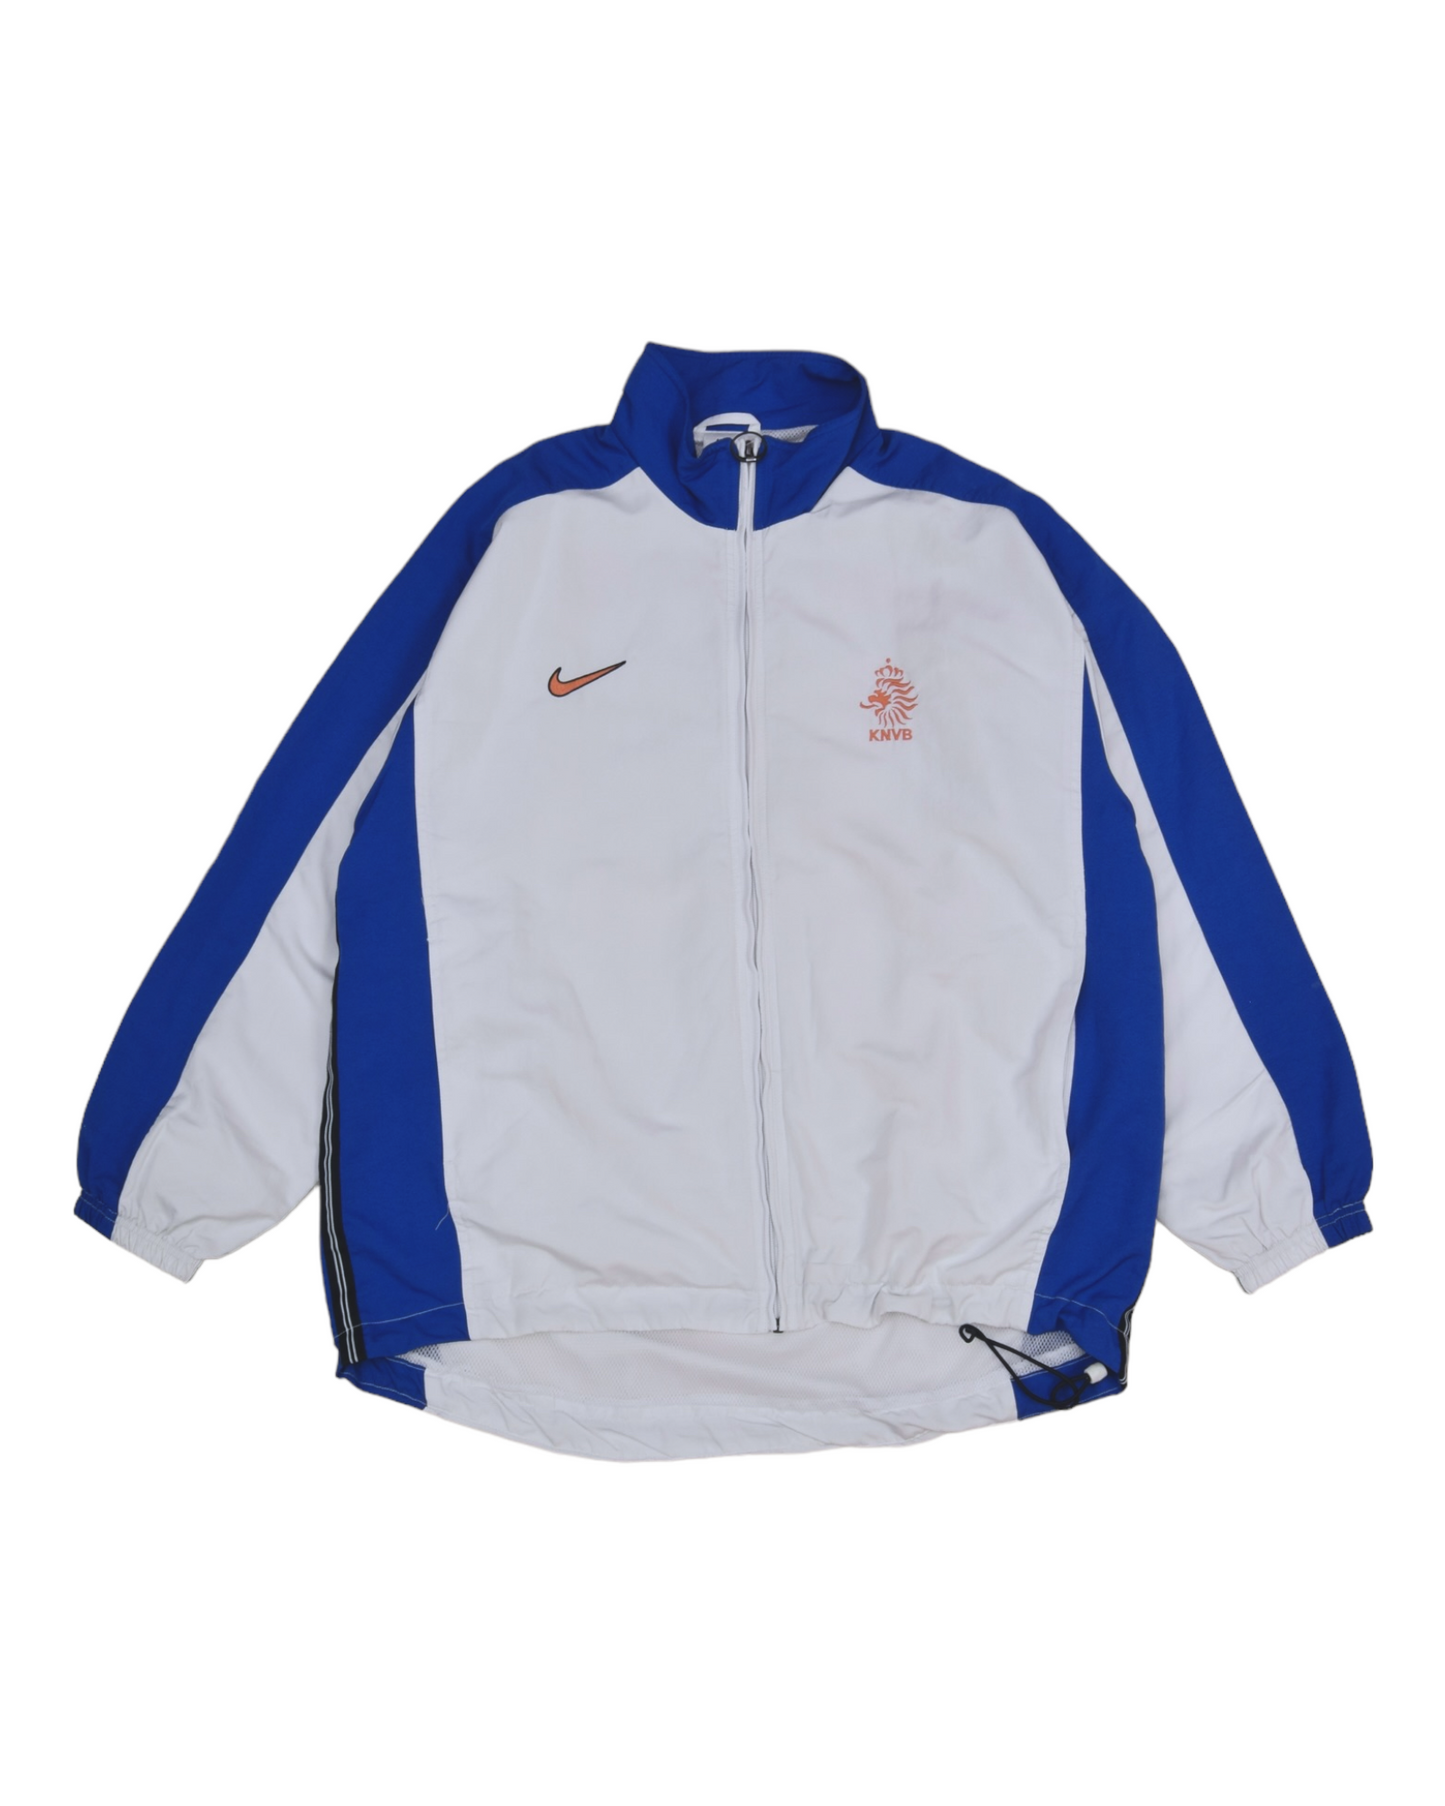 Vintage Nederland Netherlands Holland KNVB Nike 1998-1999 Jacket White Blue Size L